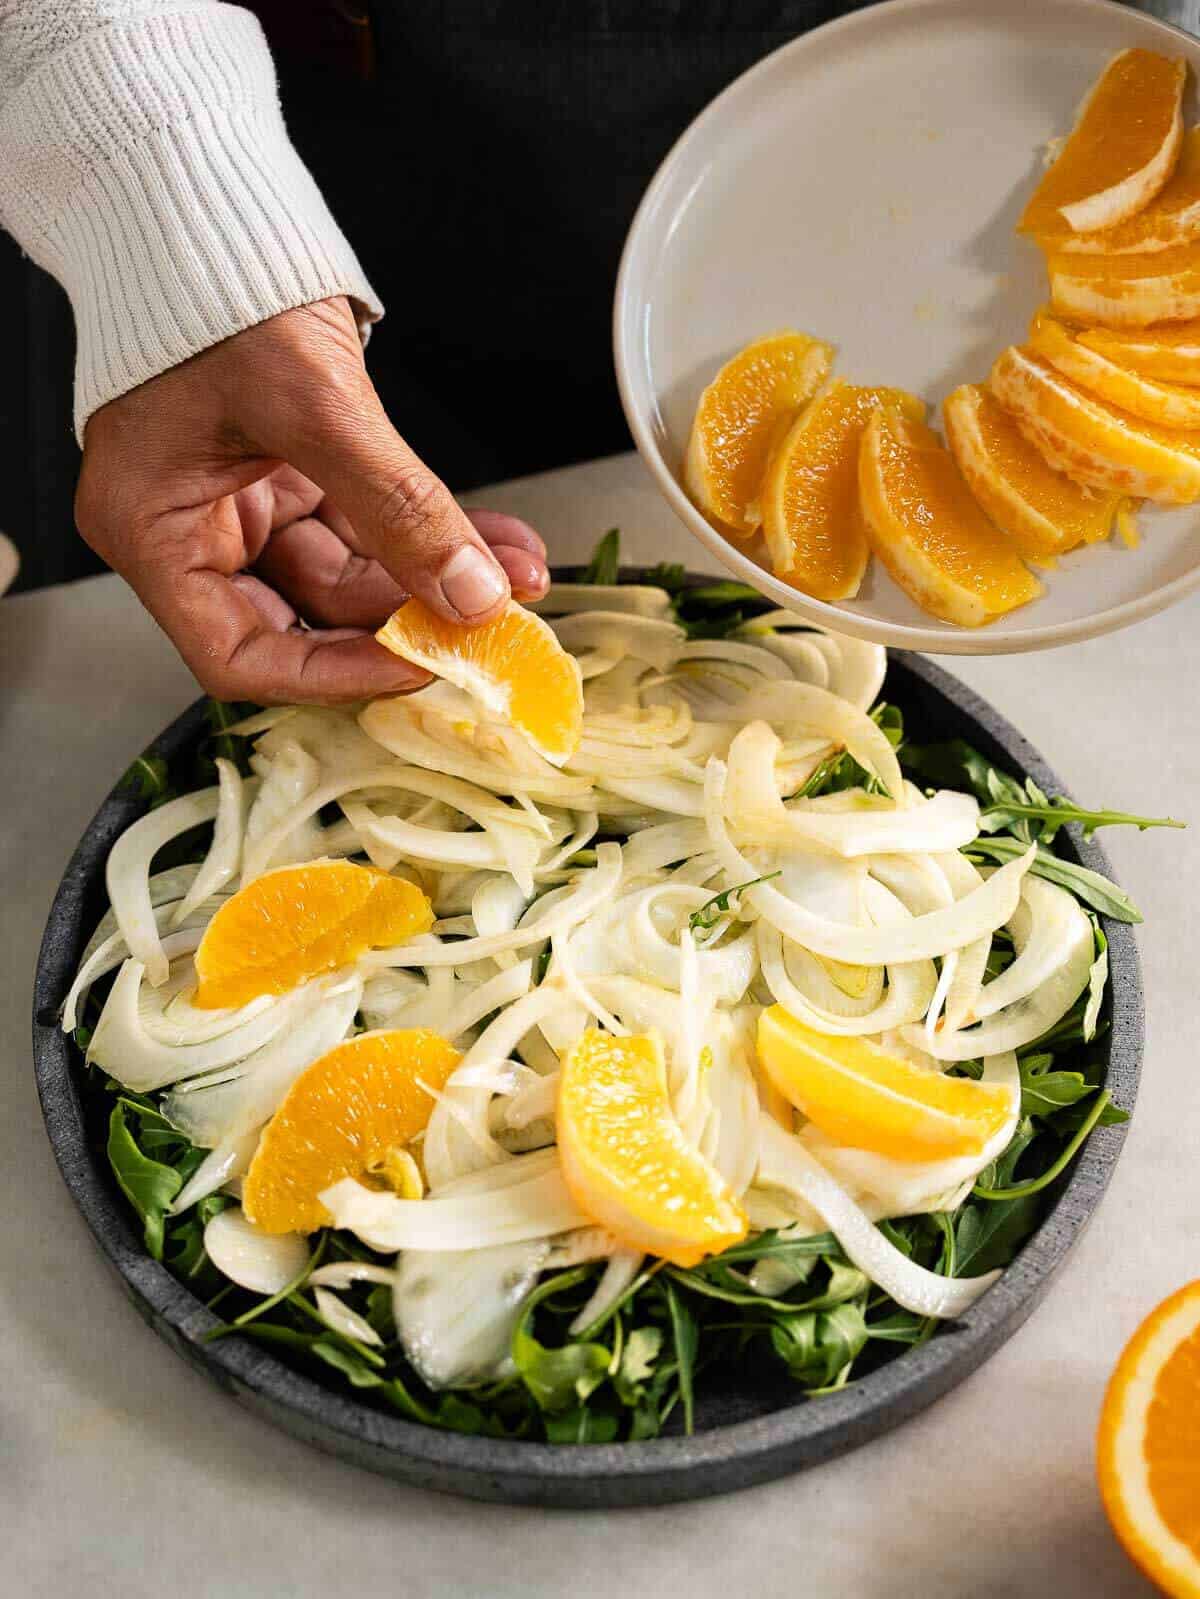 agregando naranja a la ensalada.